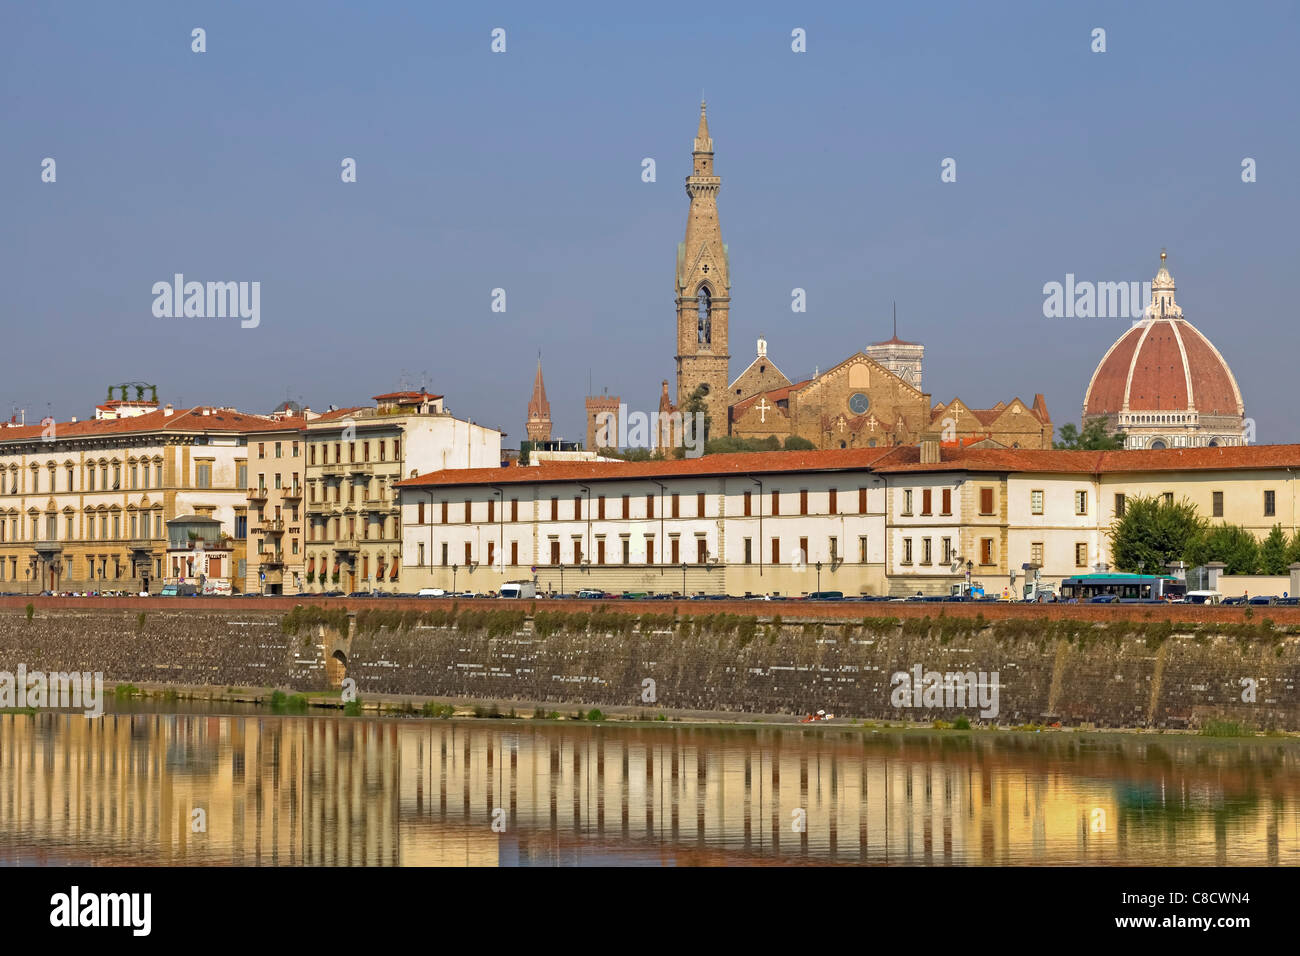 Panoramablick auf die Altstadt von Florenz Stockfoto